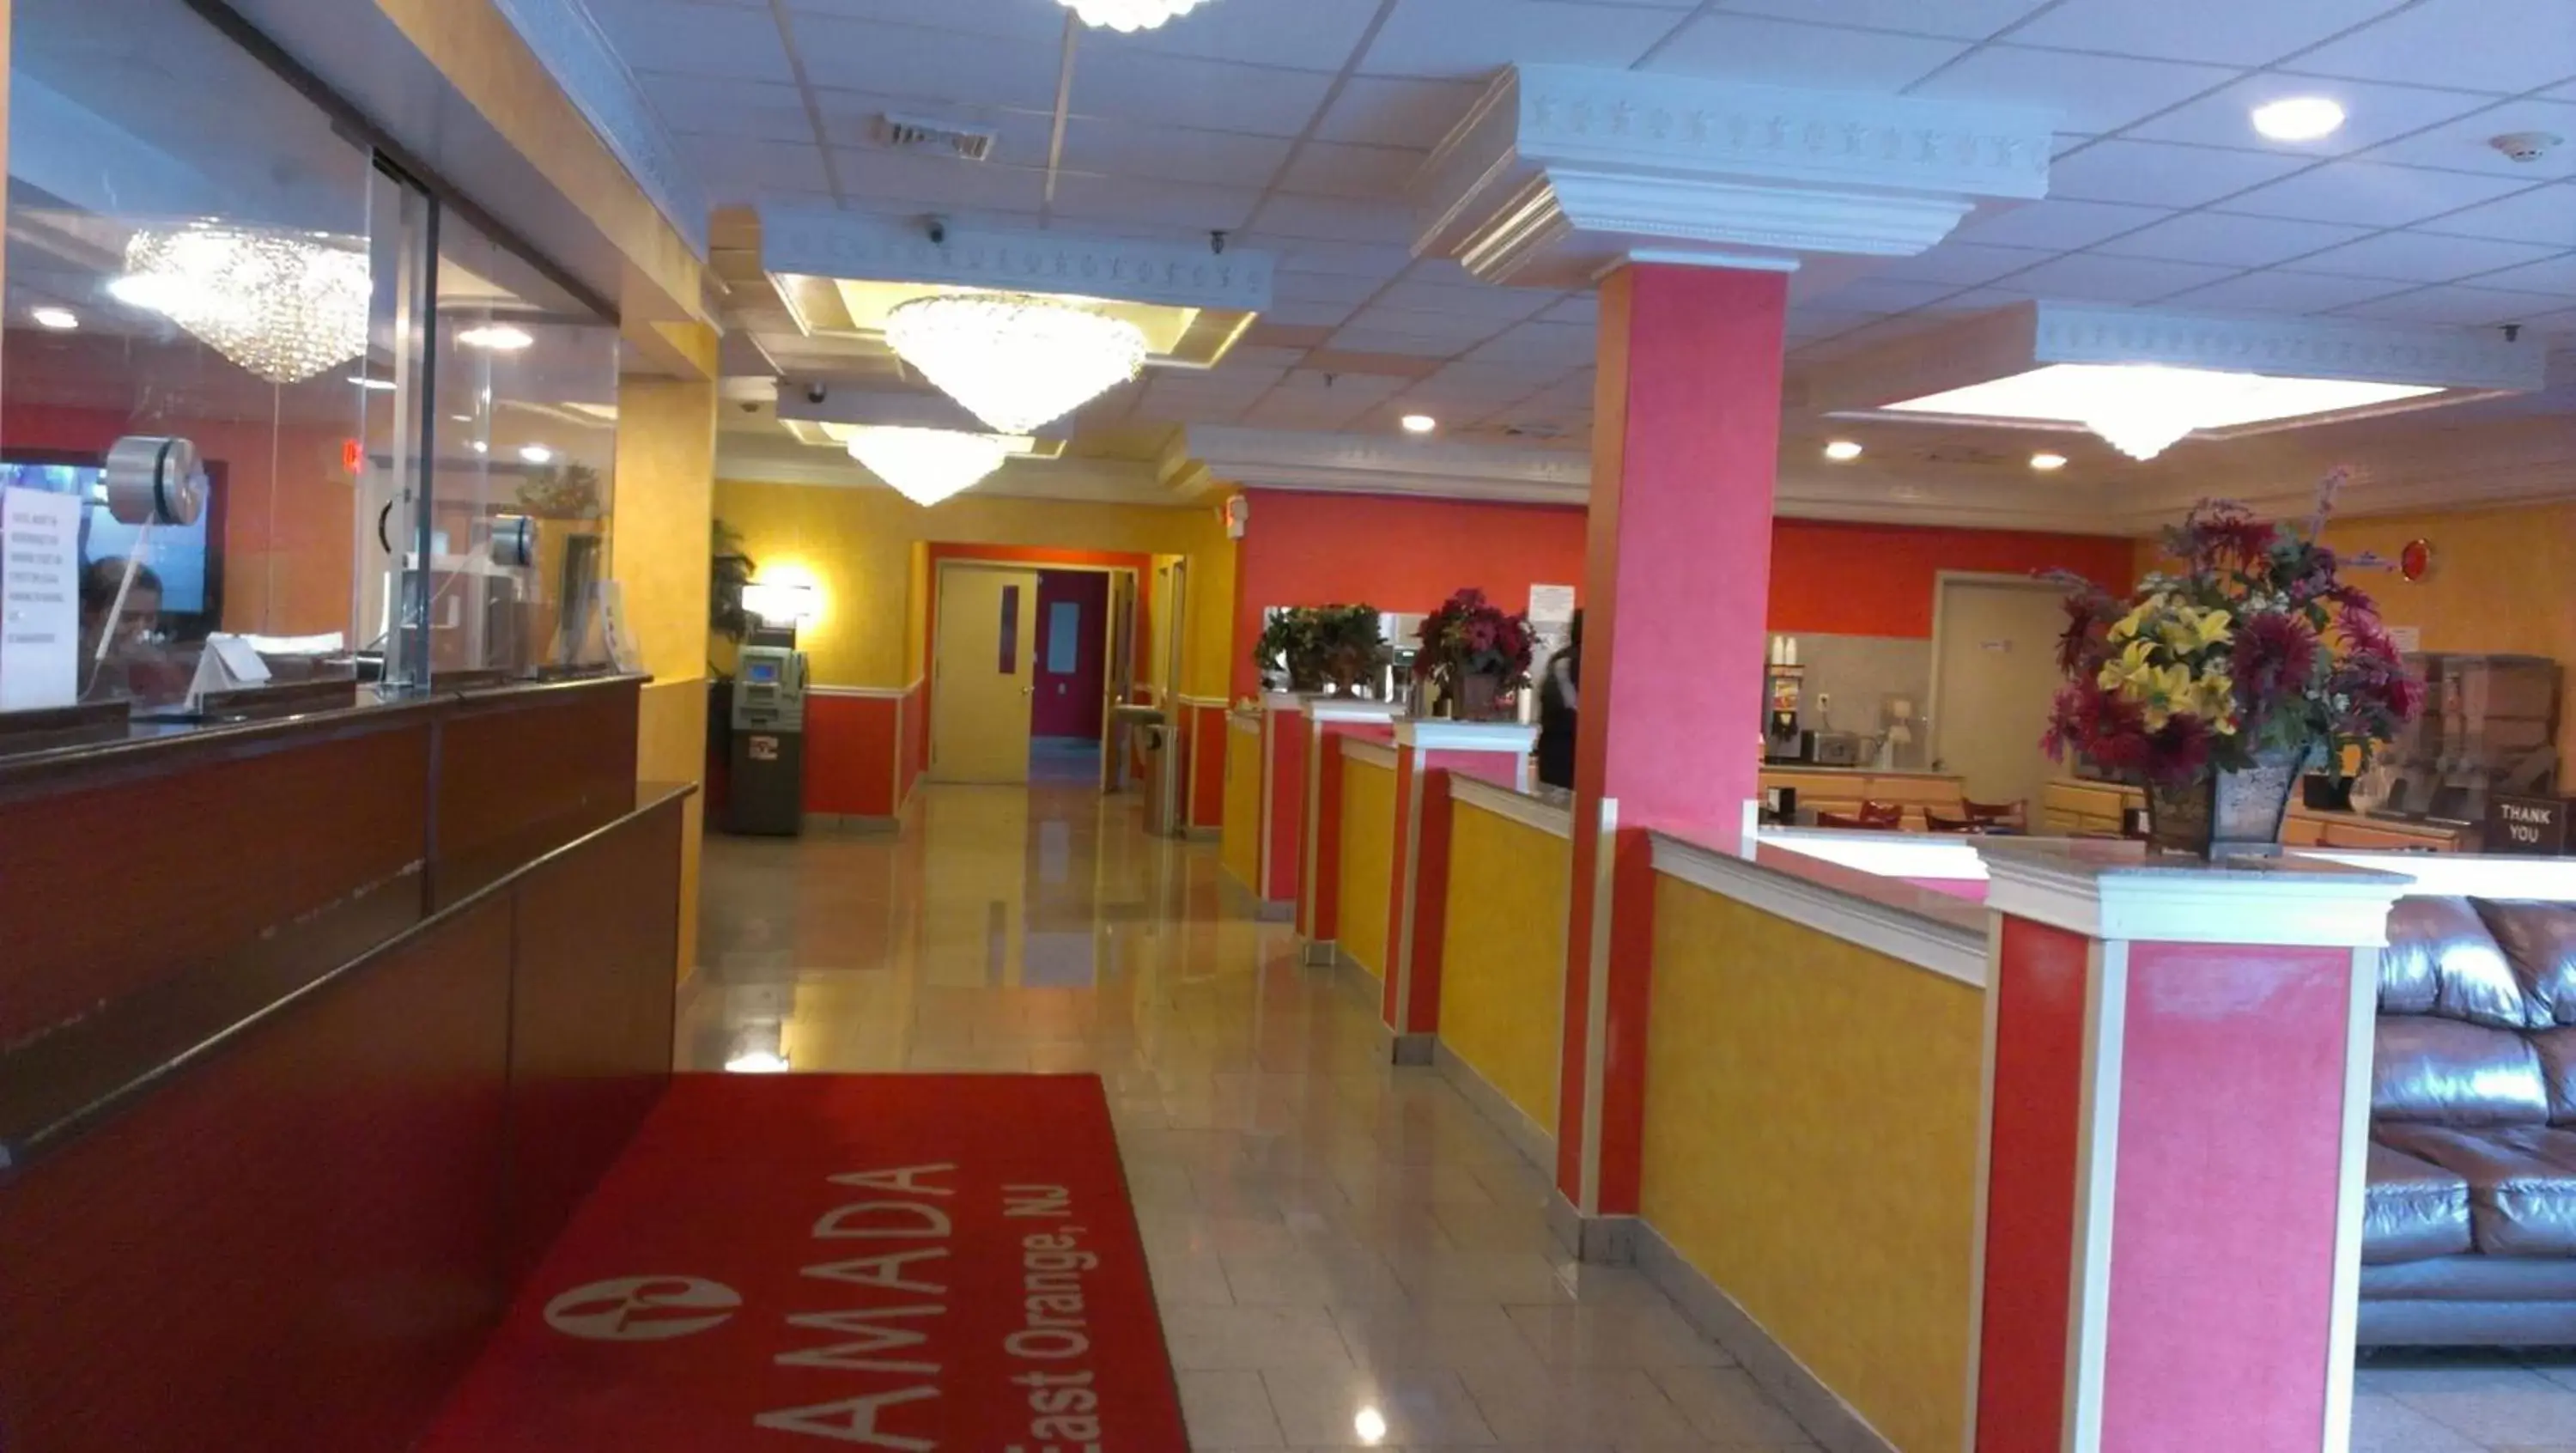 Lobby or reception in Ramada by Wyndham East Orange